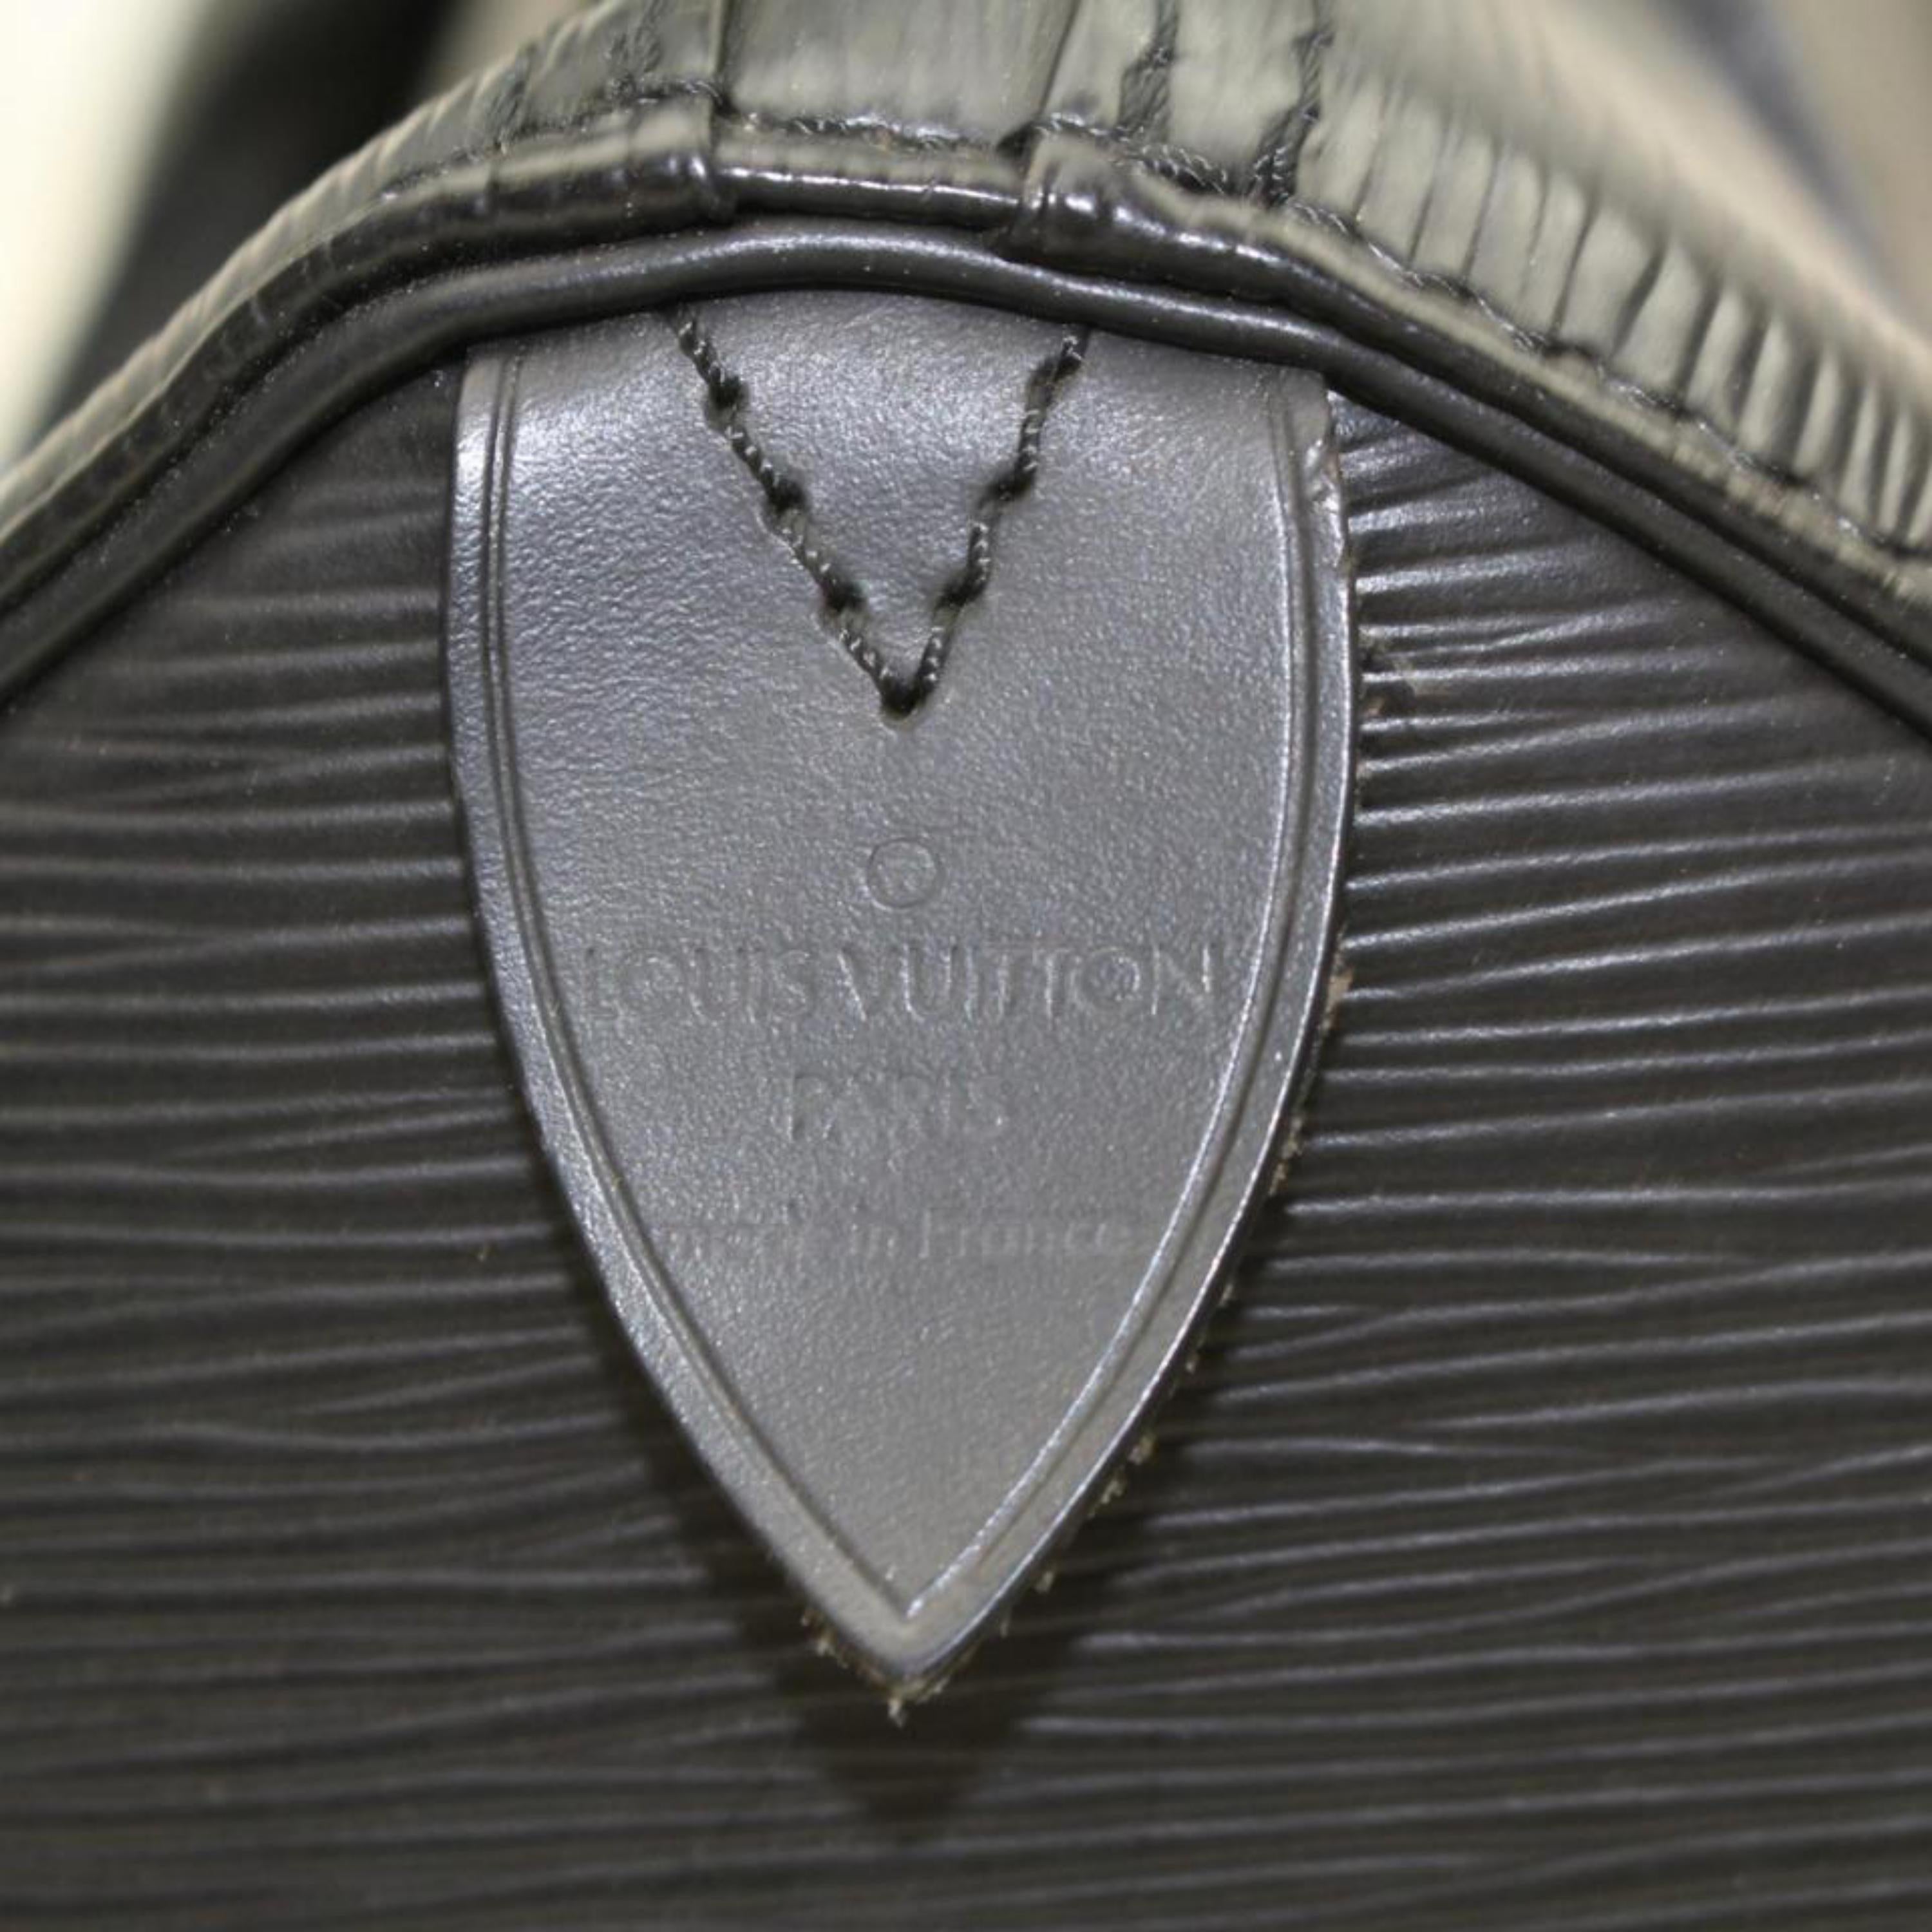 Louis Vuitton Speedy Noir 25 869188 Black Leather Satchel For Sale 1